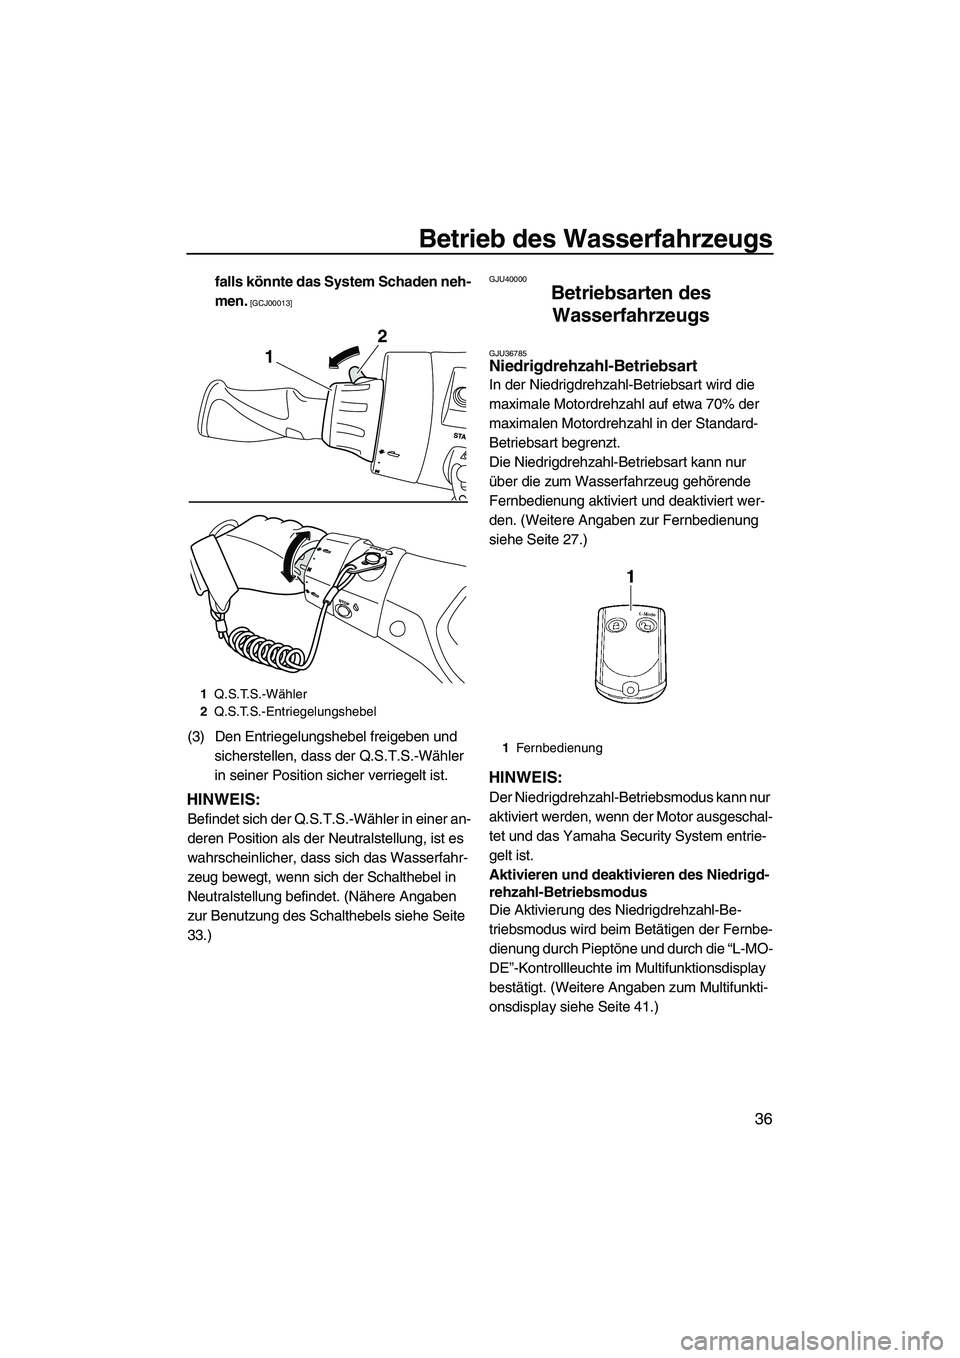 YAMAHA FX HO 2013  Betriebsanleitungen (in German) Betrieb des Wasserfahrzeugs
36
falls könnte das System Schaden neh-
men.
 [GCJ00013]
(3) Den Entriegelungshebel freigeben und sicherstellen, dass der Q.S.T.S.-Wähler 
in seiner Position sicher verri